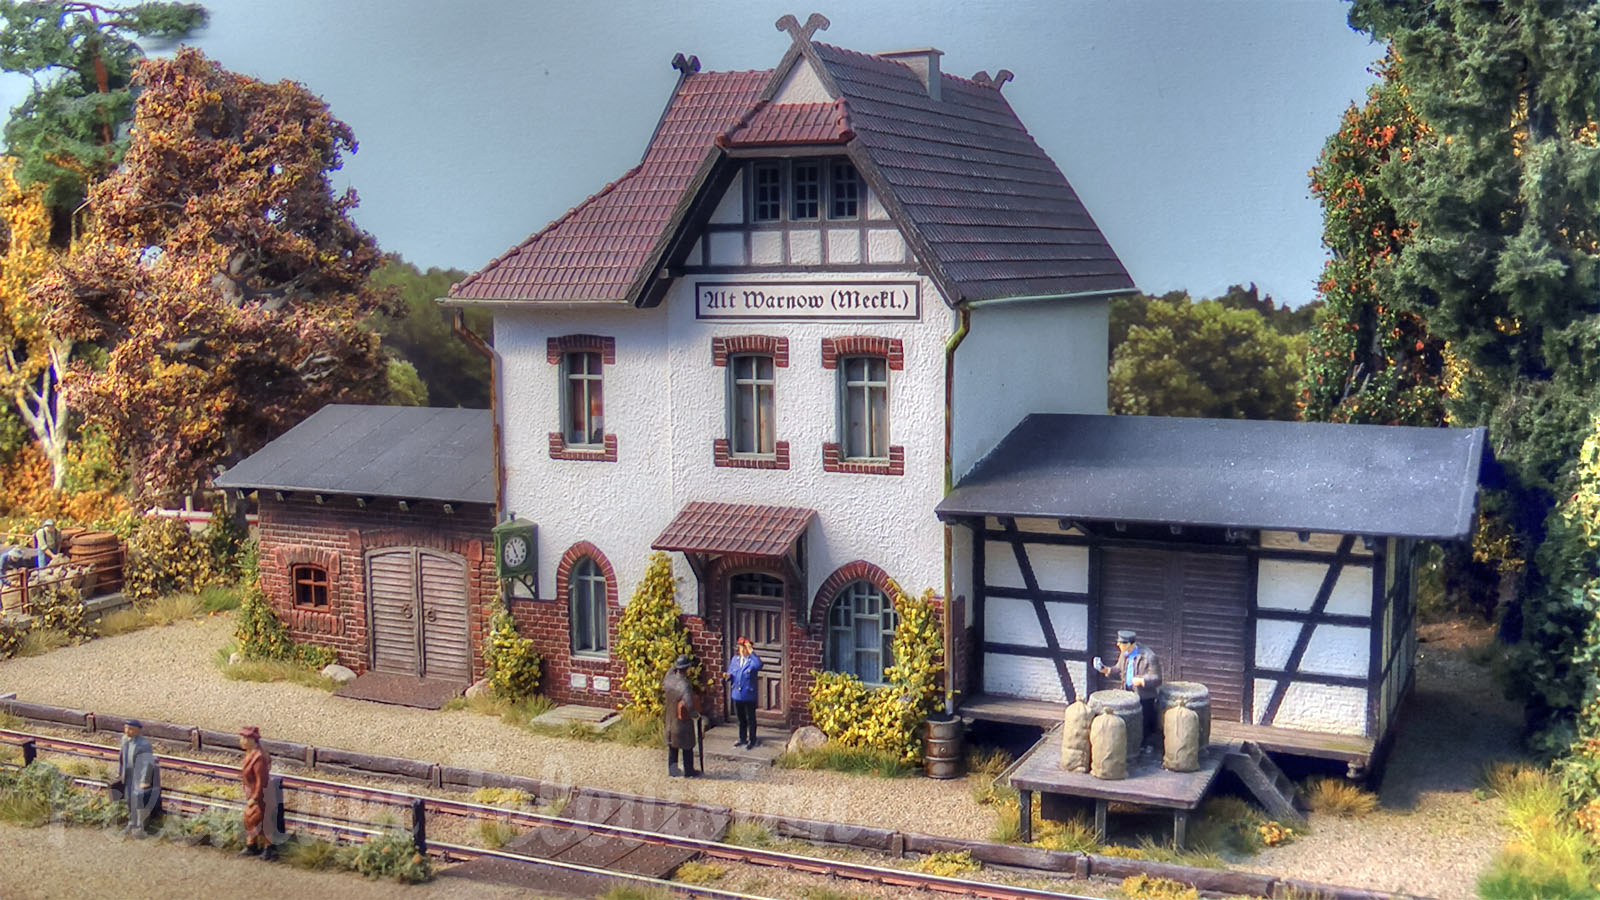 Bellissimo plastico ferroviario della Germania - Vecchie locomotive e treni a vapore